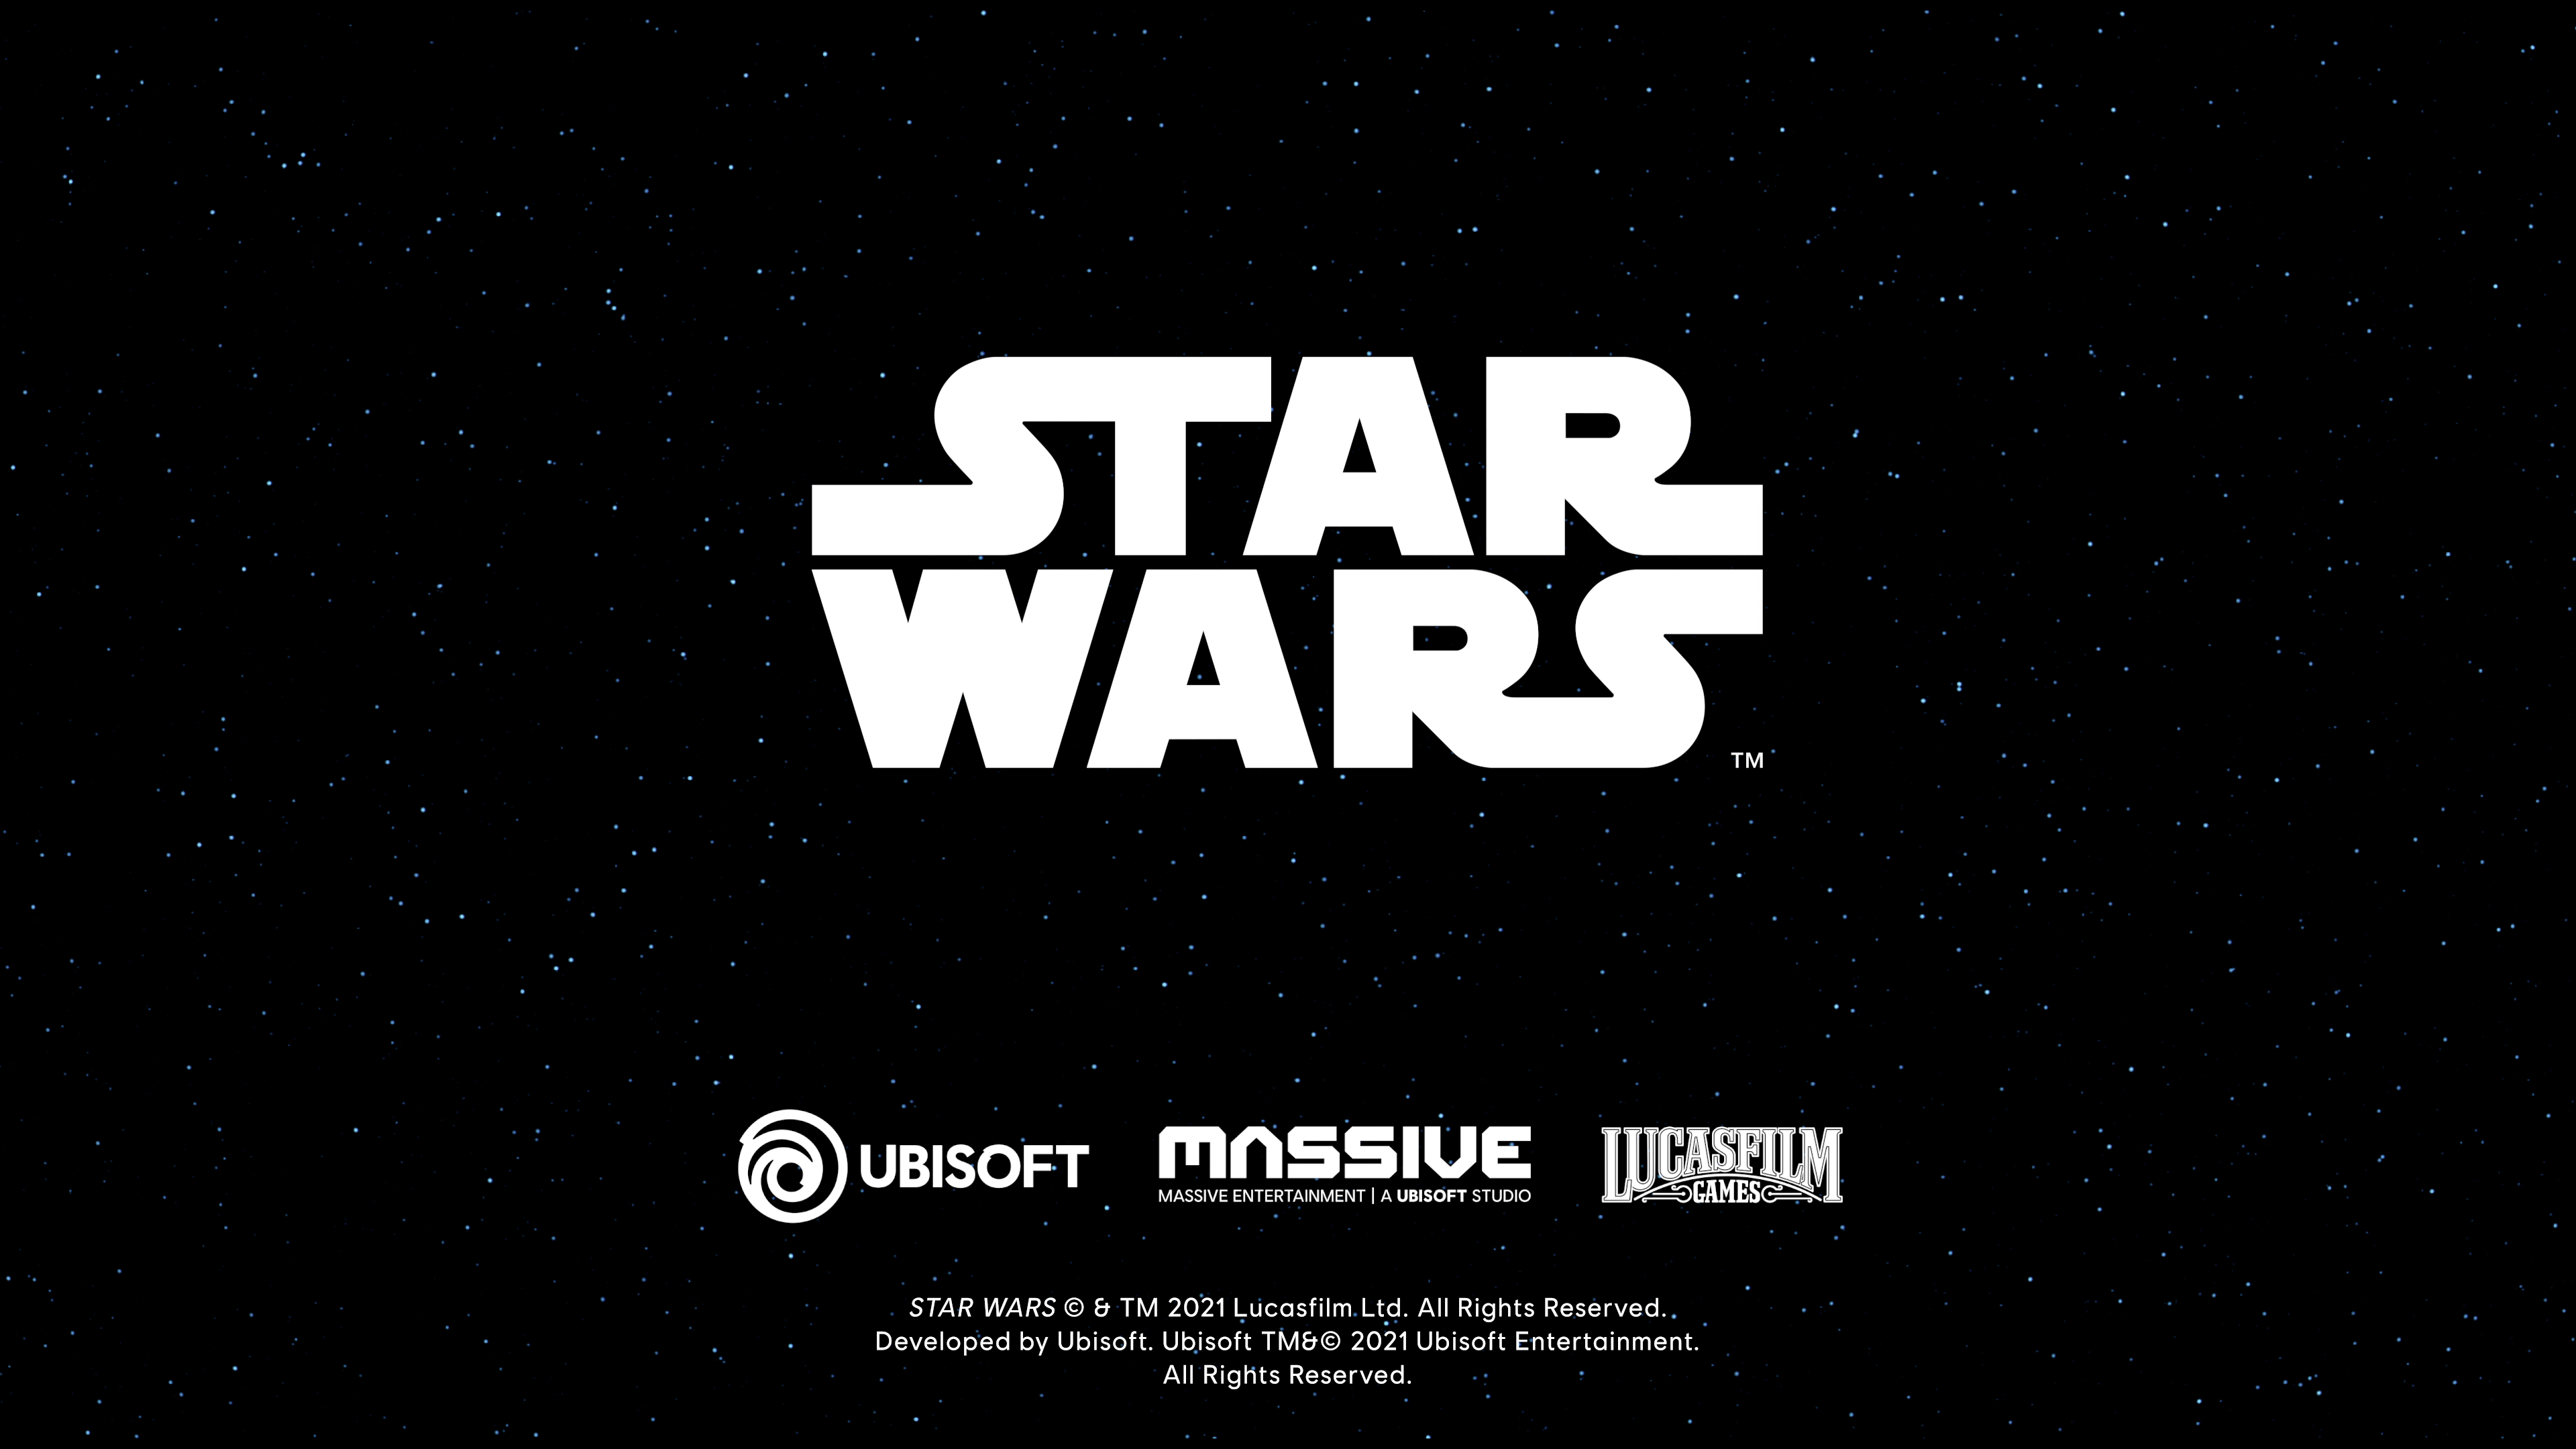 Nouveau jeu Star wars en open world par Ubisoft